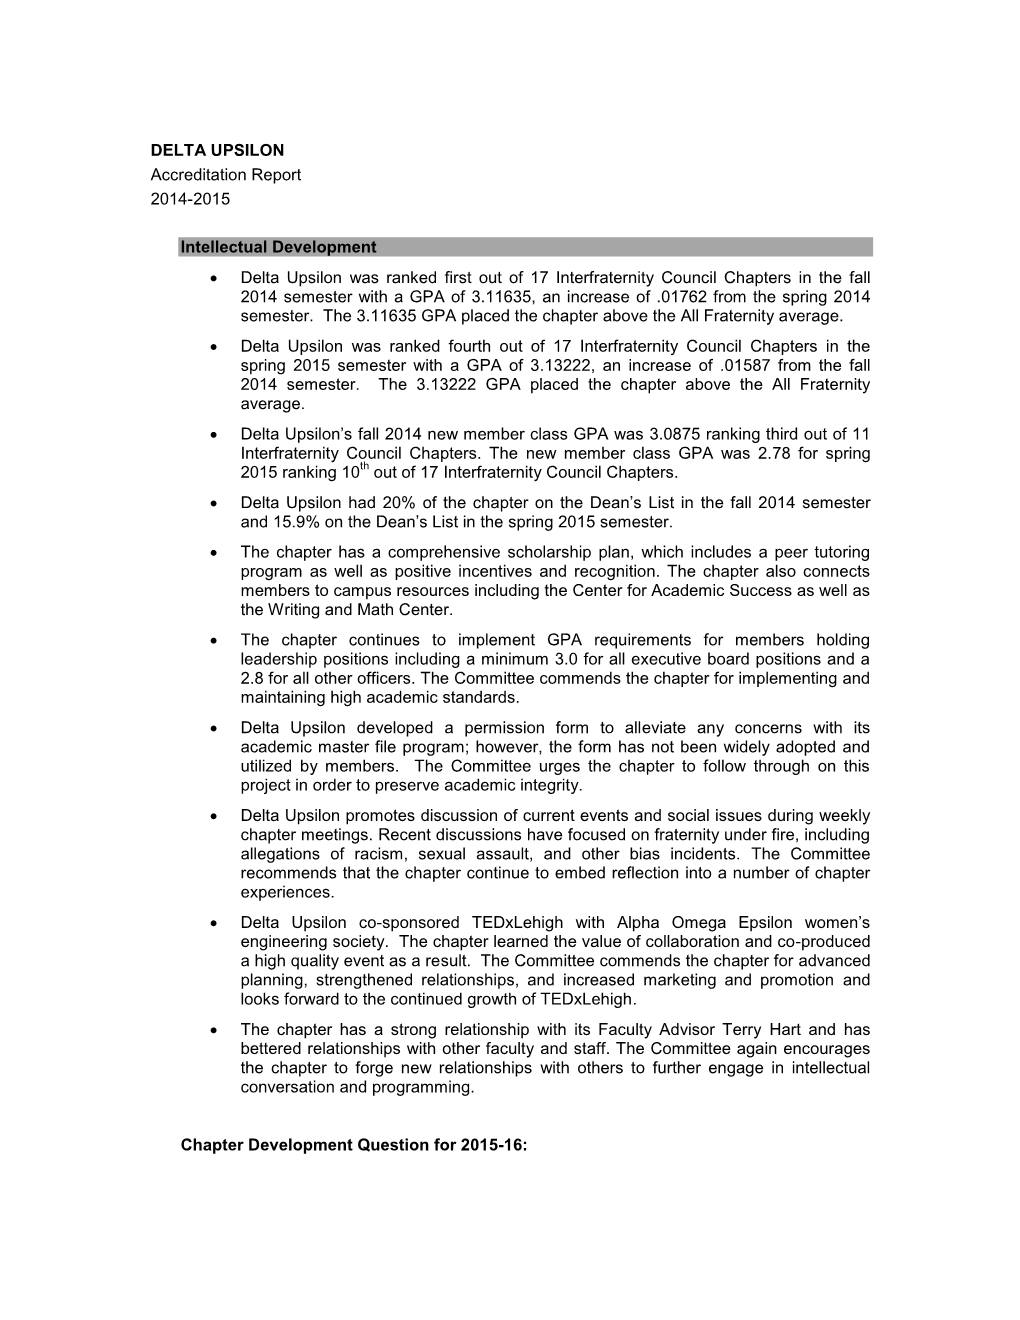 DELTA UPSILON Accreditation Report 2014-2015